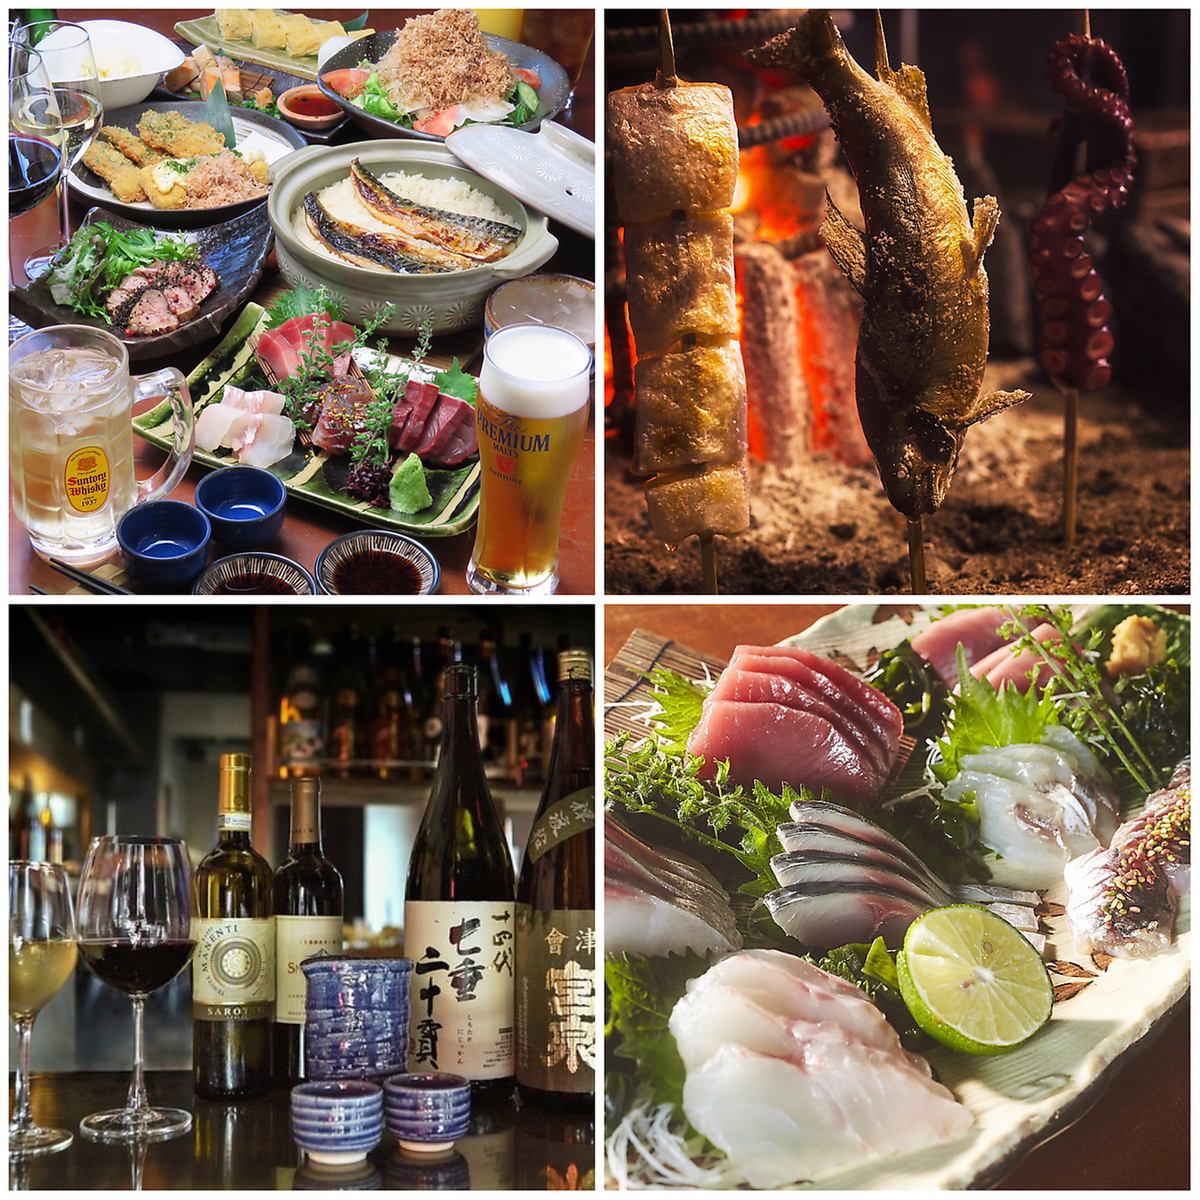 저희 가게 자랑의 생선과 궁합 발군의 와인·일본술을 즐길 수 있습니다!